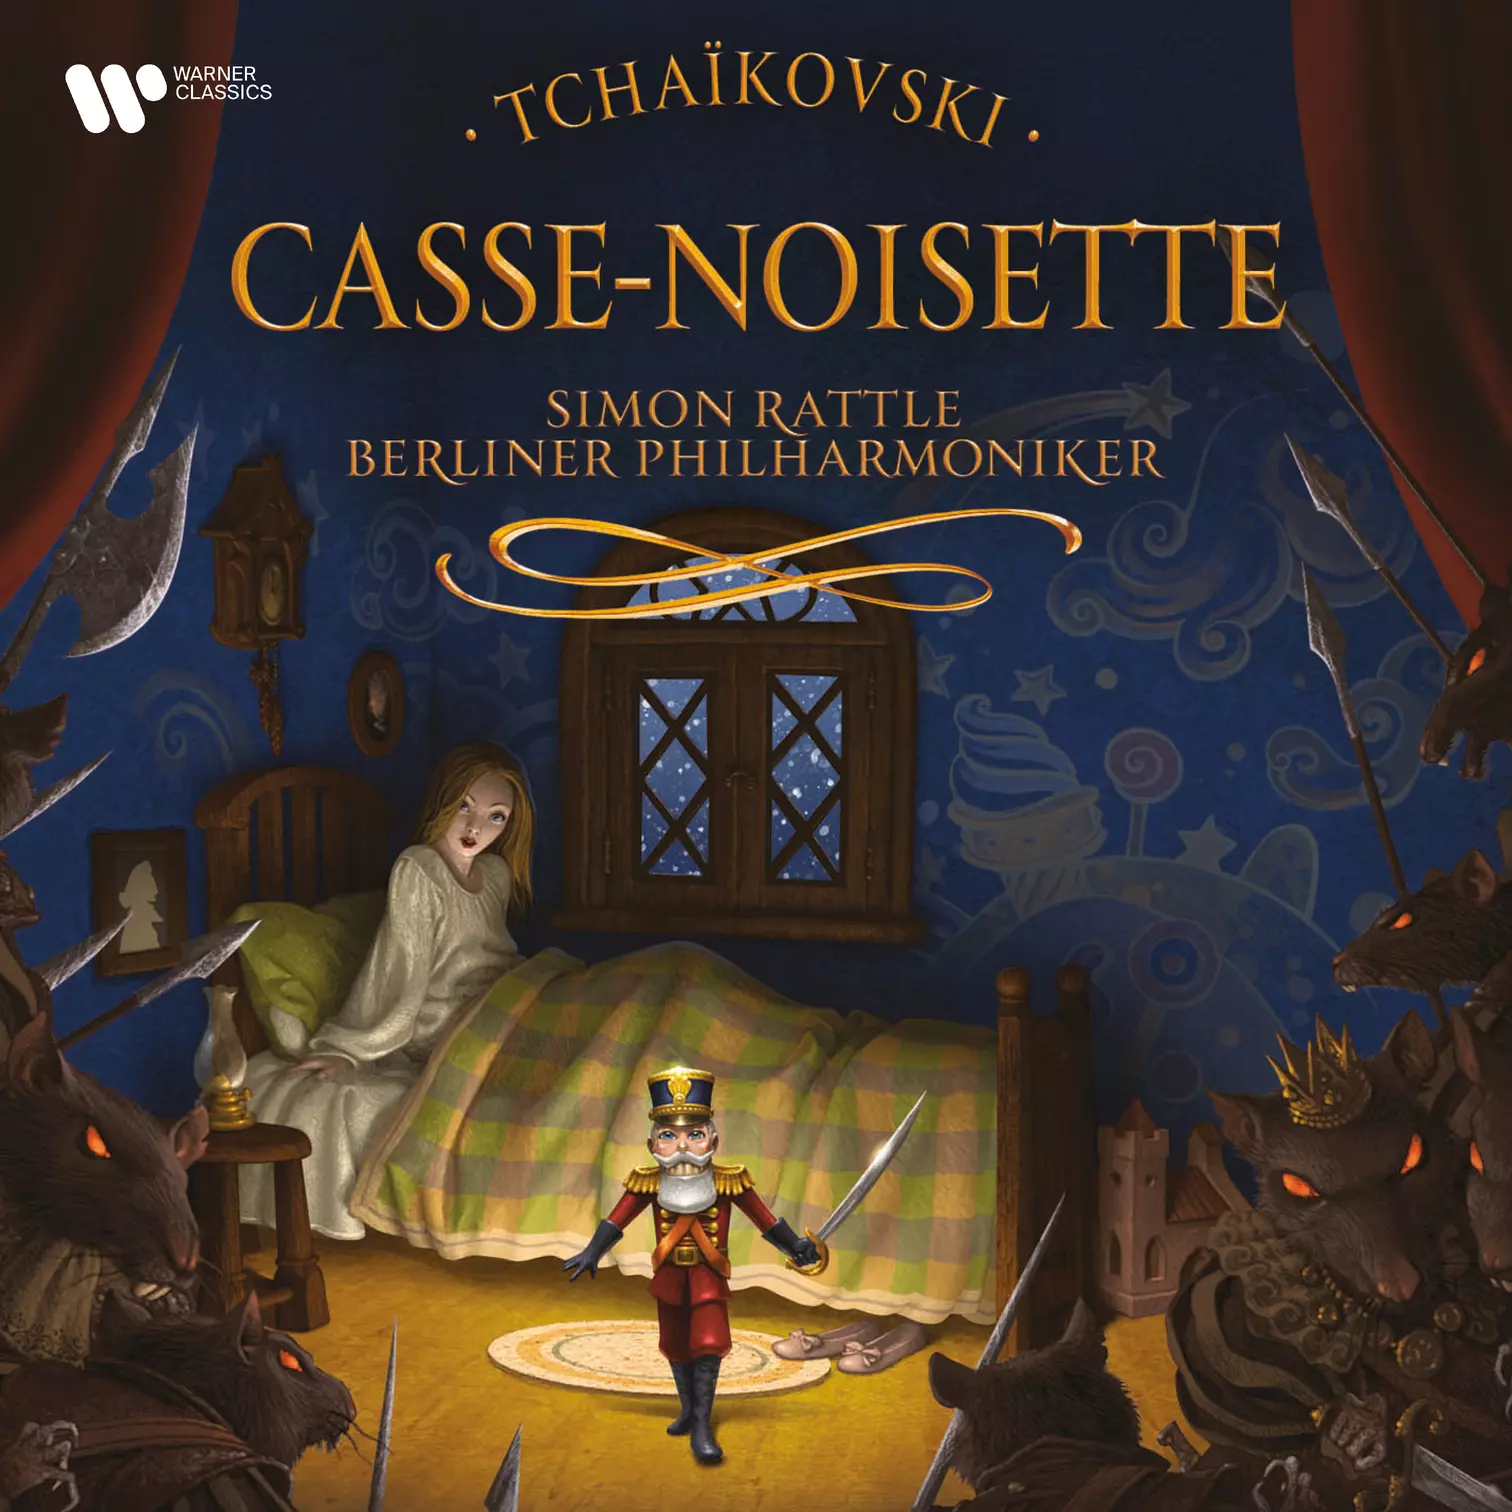 Tchaïkovski: Casse-noisette